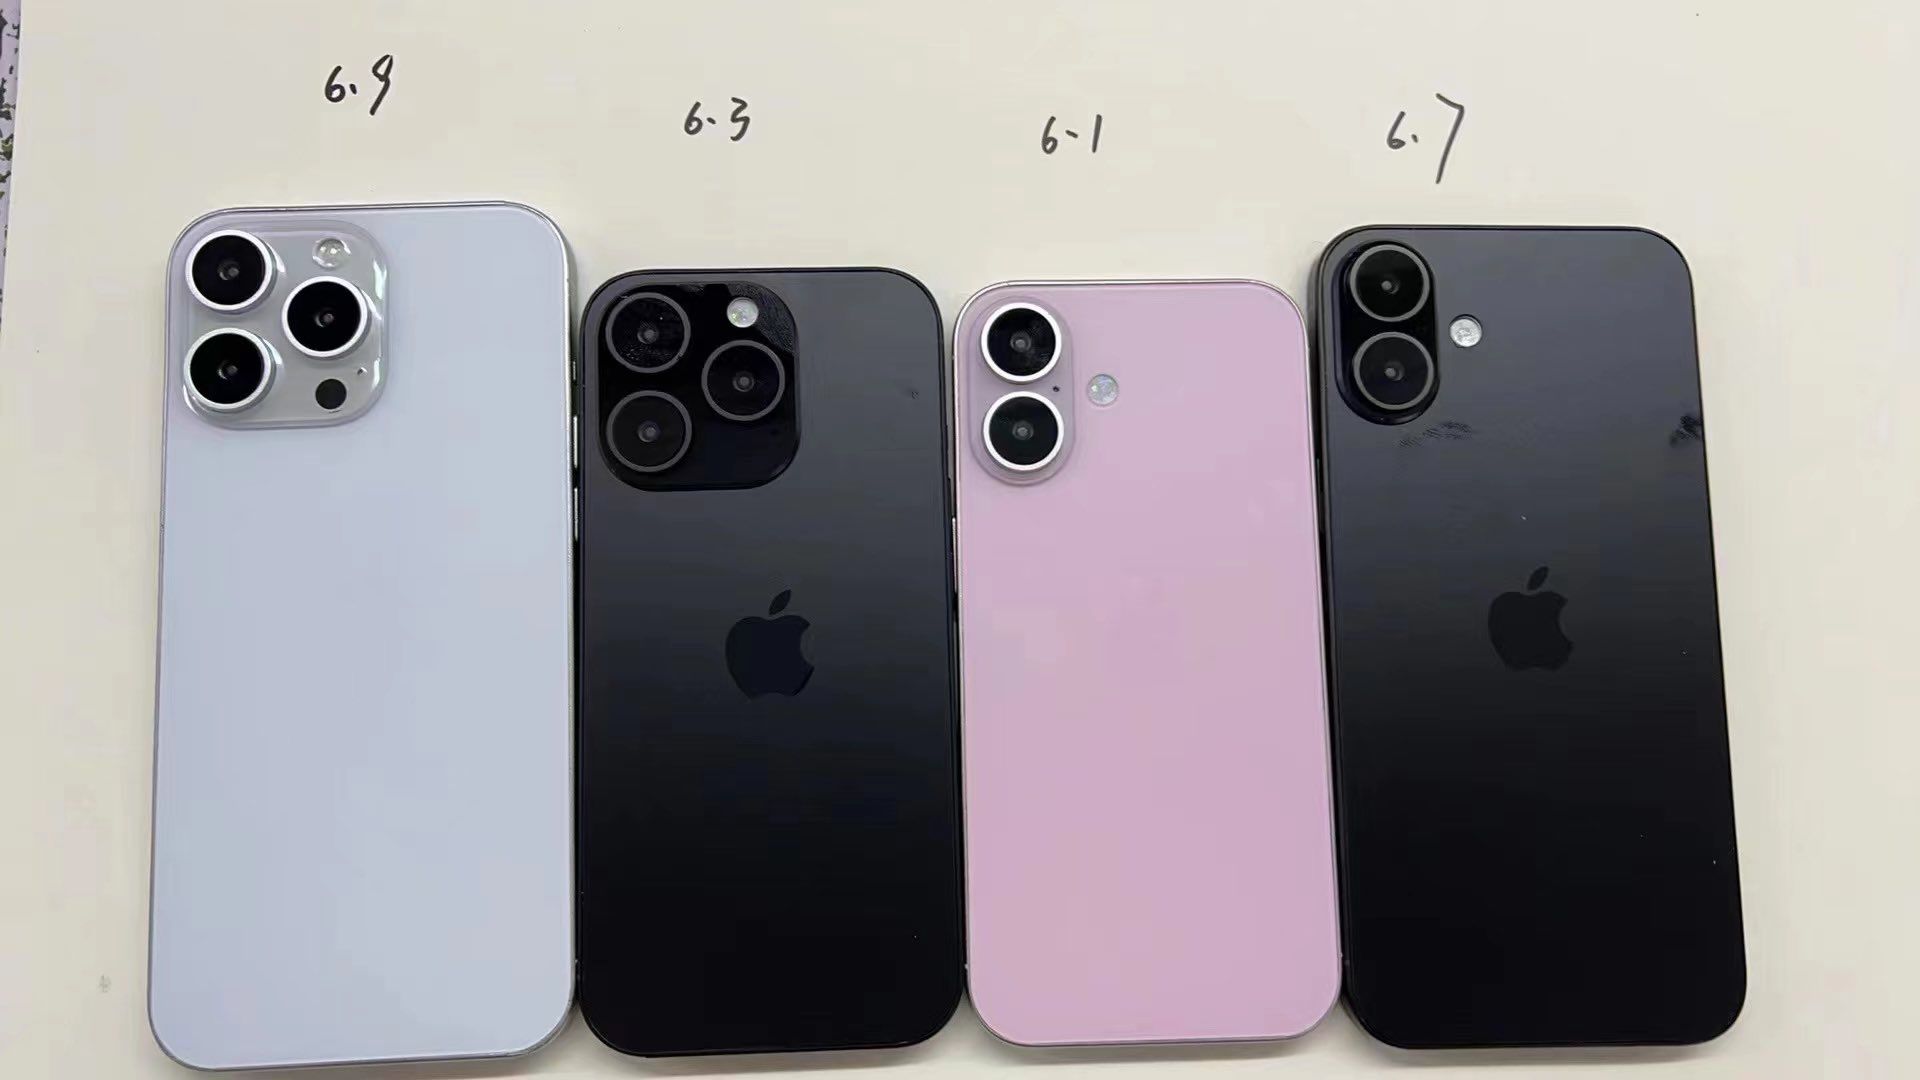 Манекены модельного ряда iPhone 16 показывают сравнение четырех размеров моделей